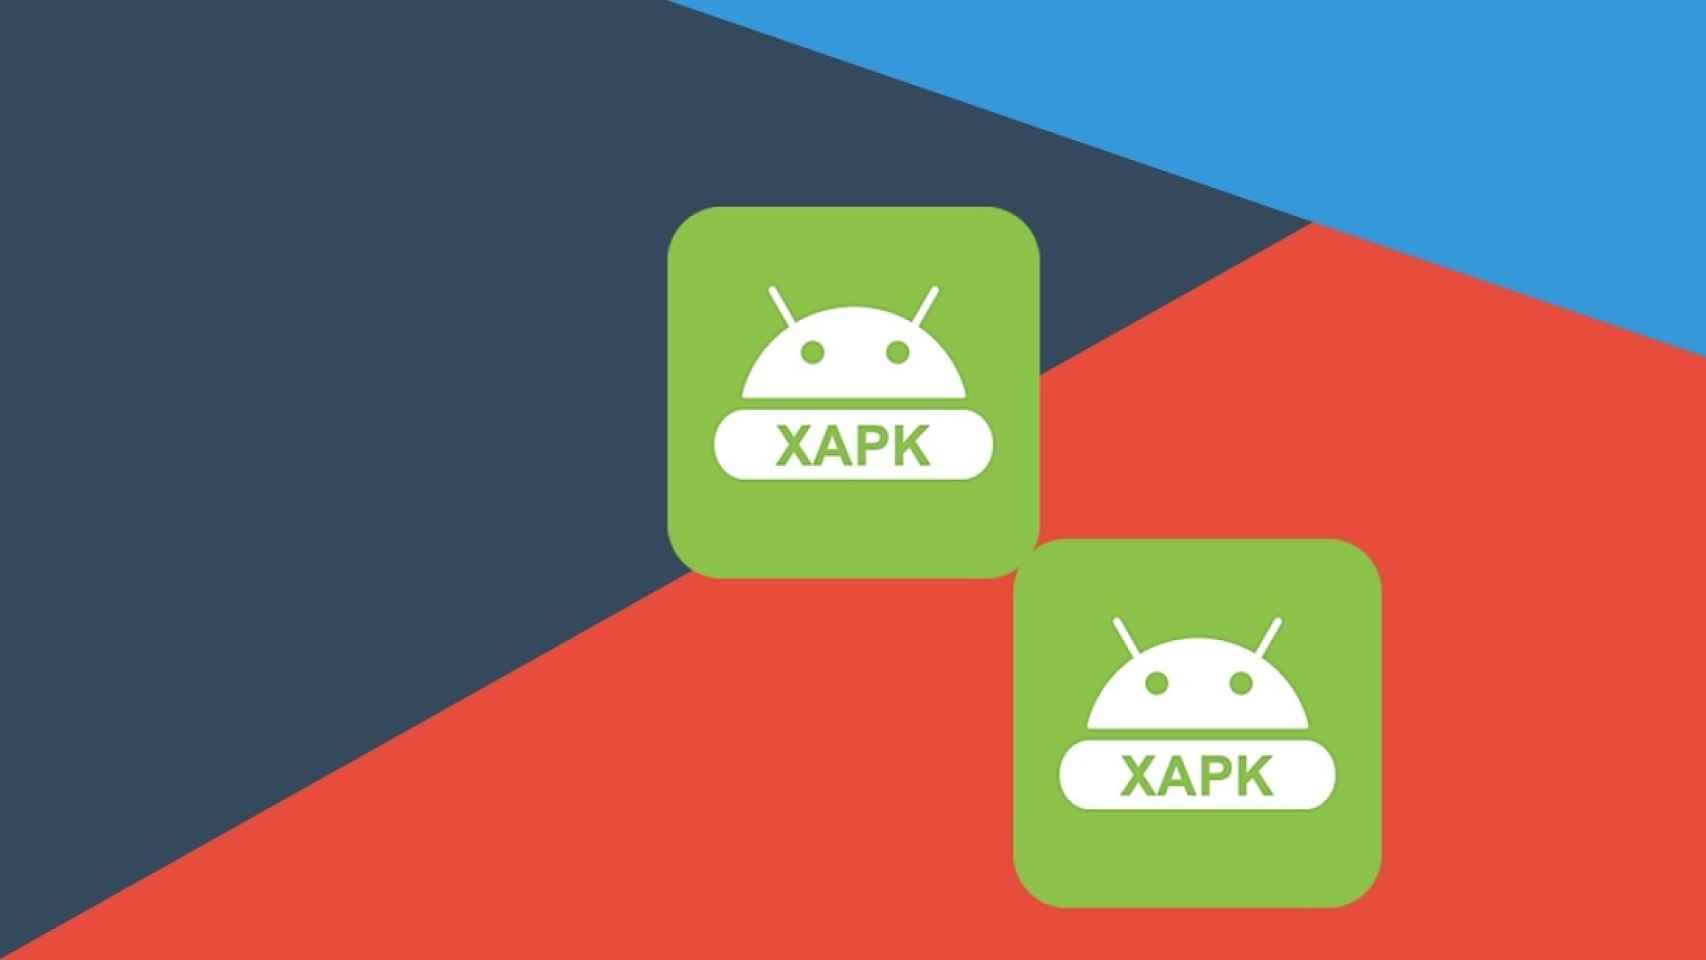 Archivos XAPK: Qué son, para qué sirven y cómo se abren en Android